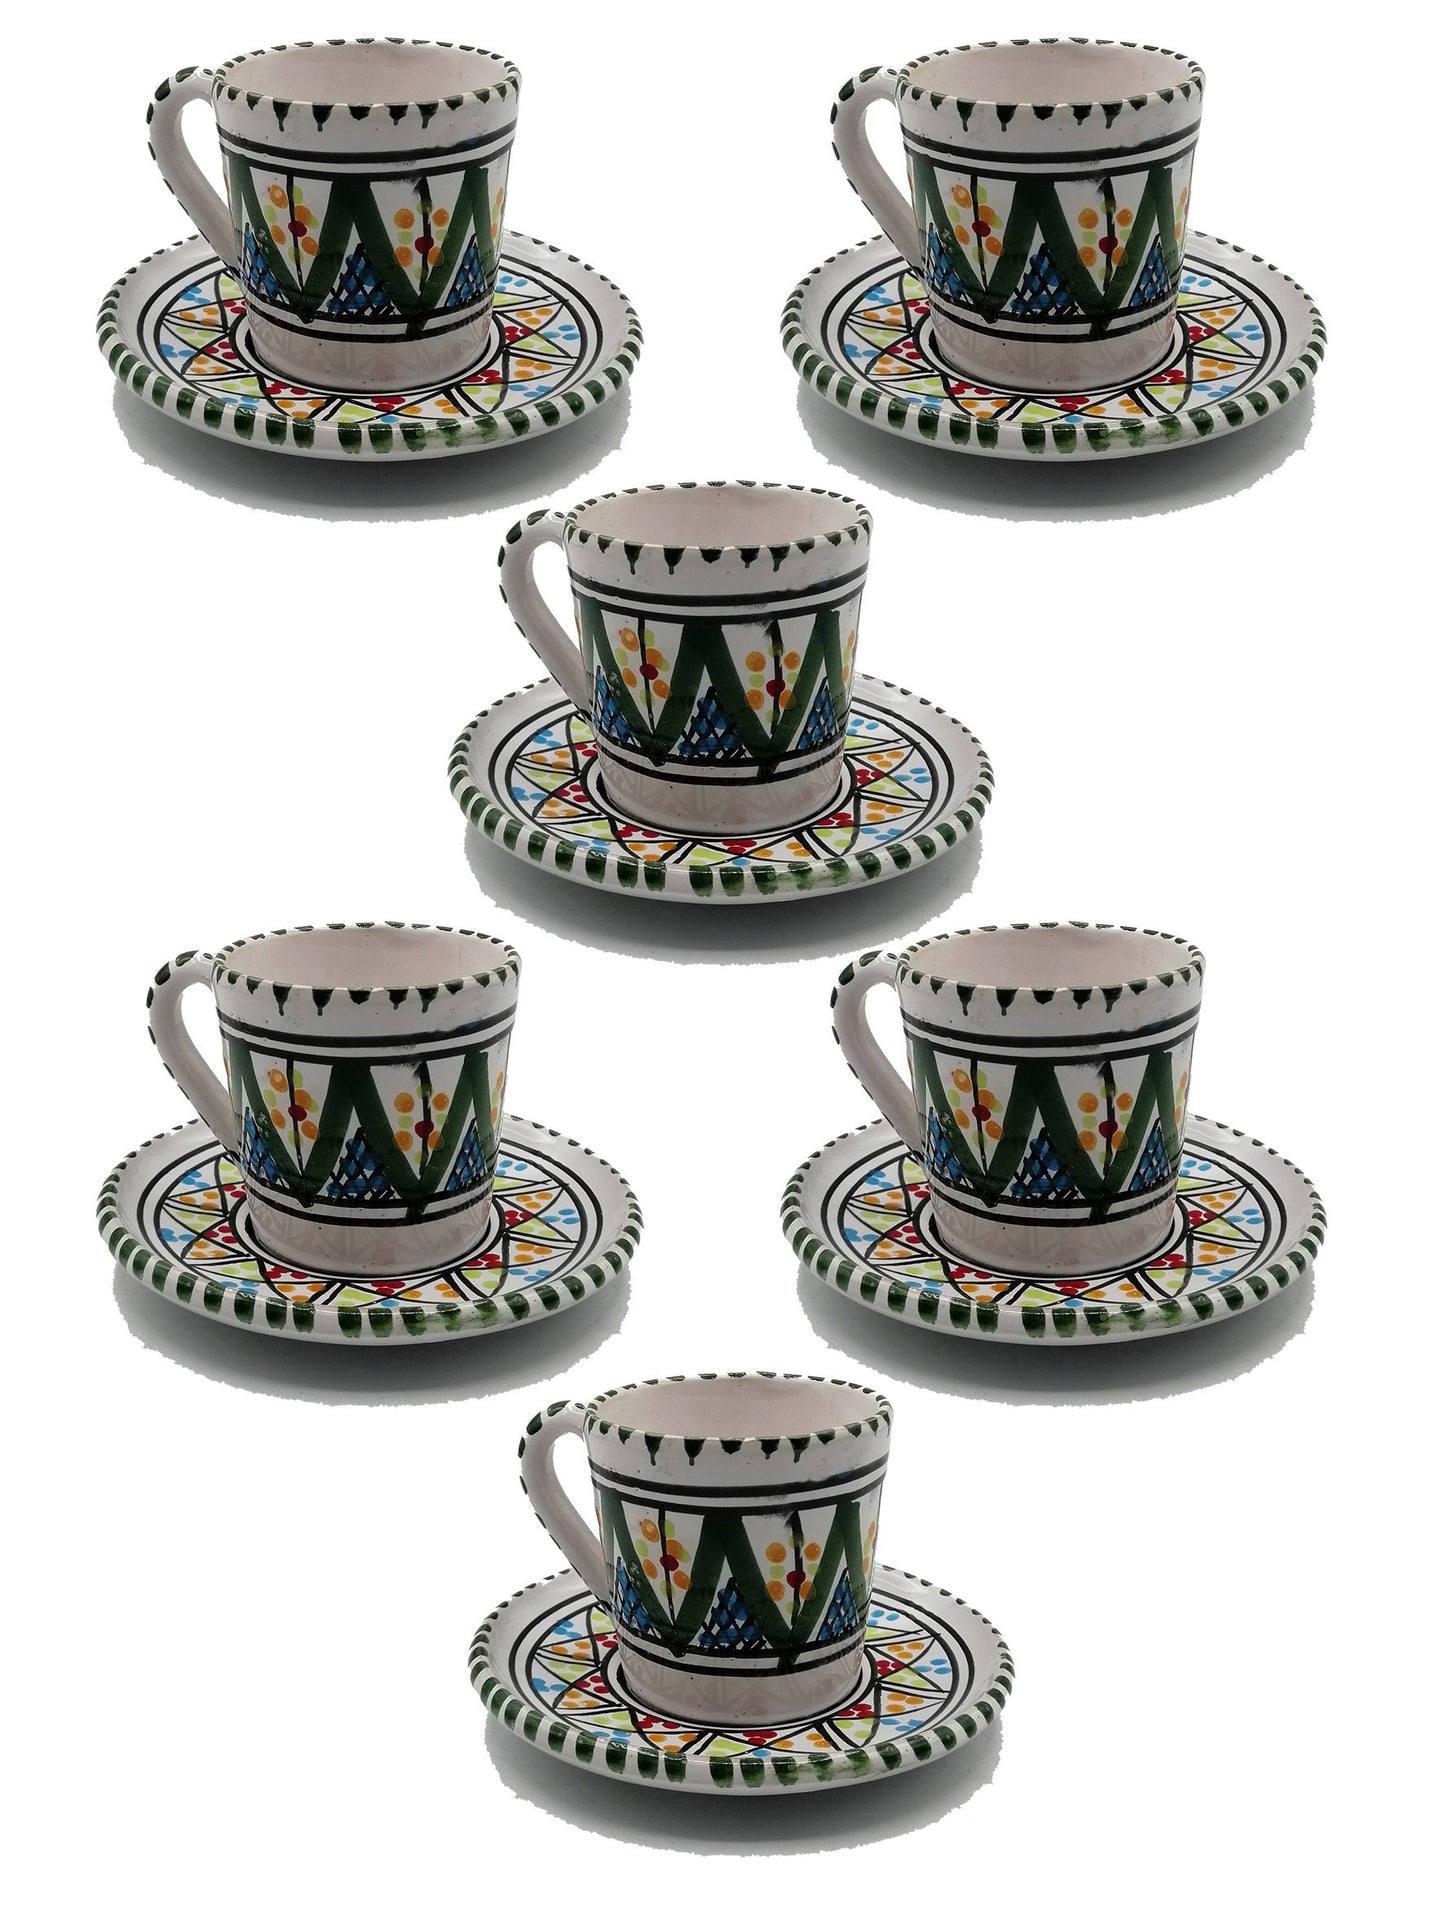 Servizio Tazzine da 6 Caffe Ceramica Dipinta a Mano Tunisina Marocchina 1211200910